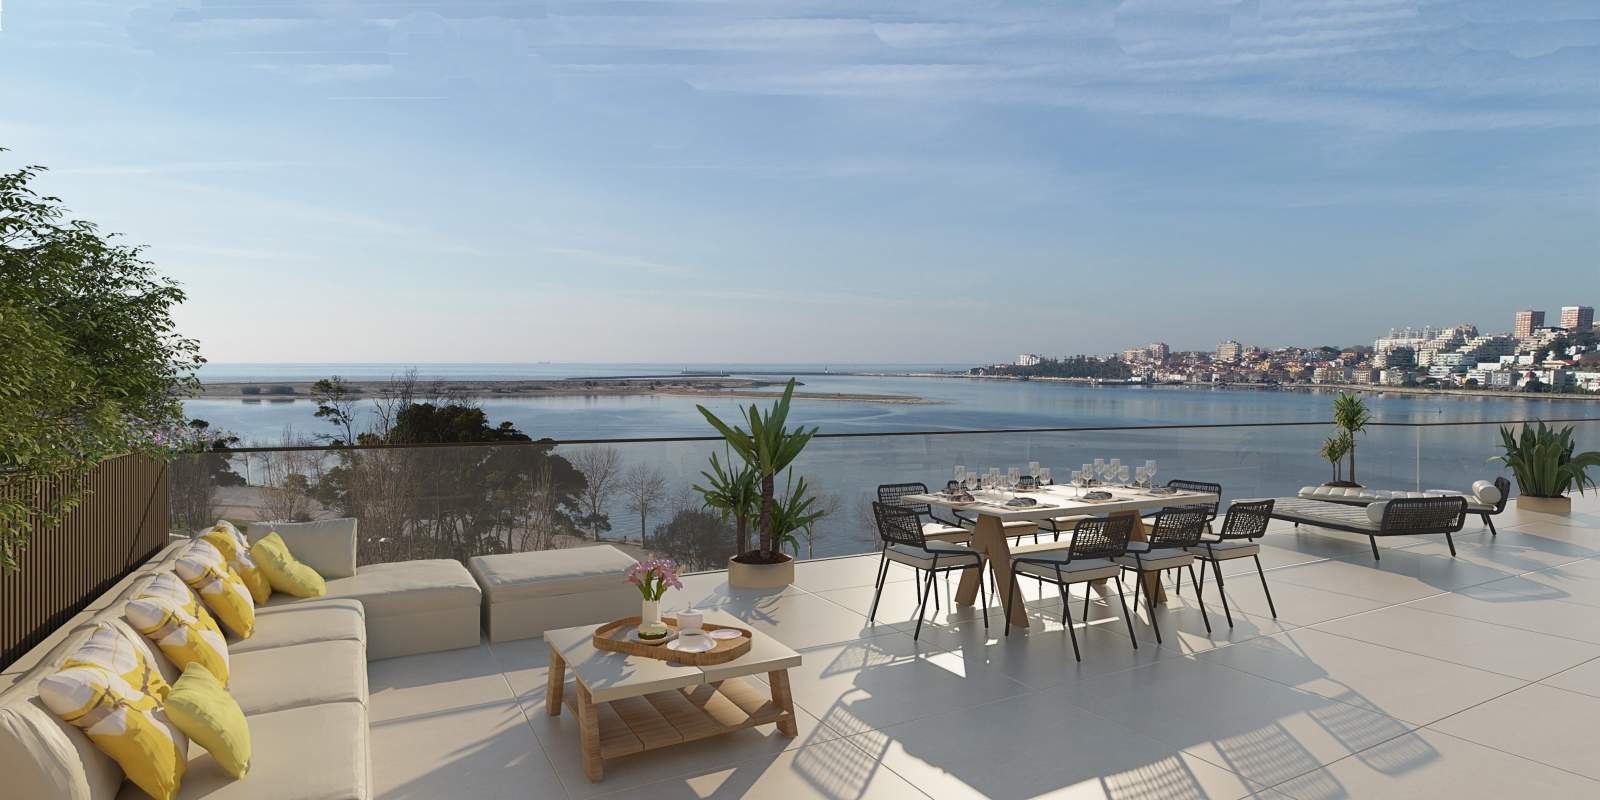 Piso en venta con terraza, en exclusivo condominio, V. N. Gaia, Porto, Portugal_175784